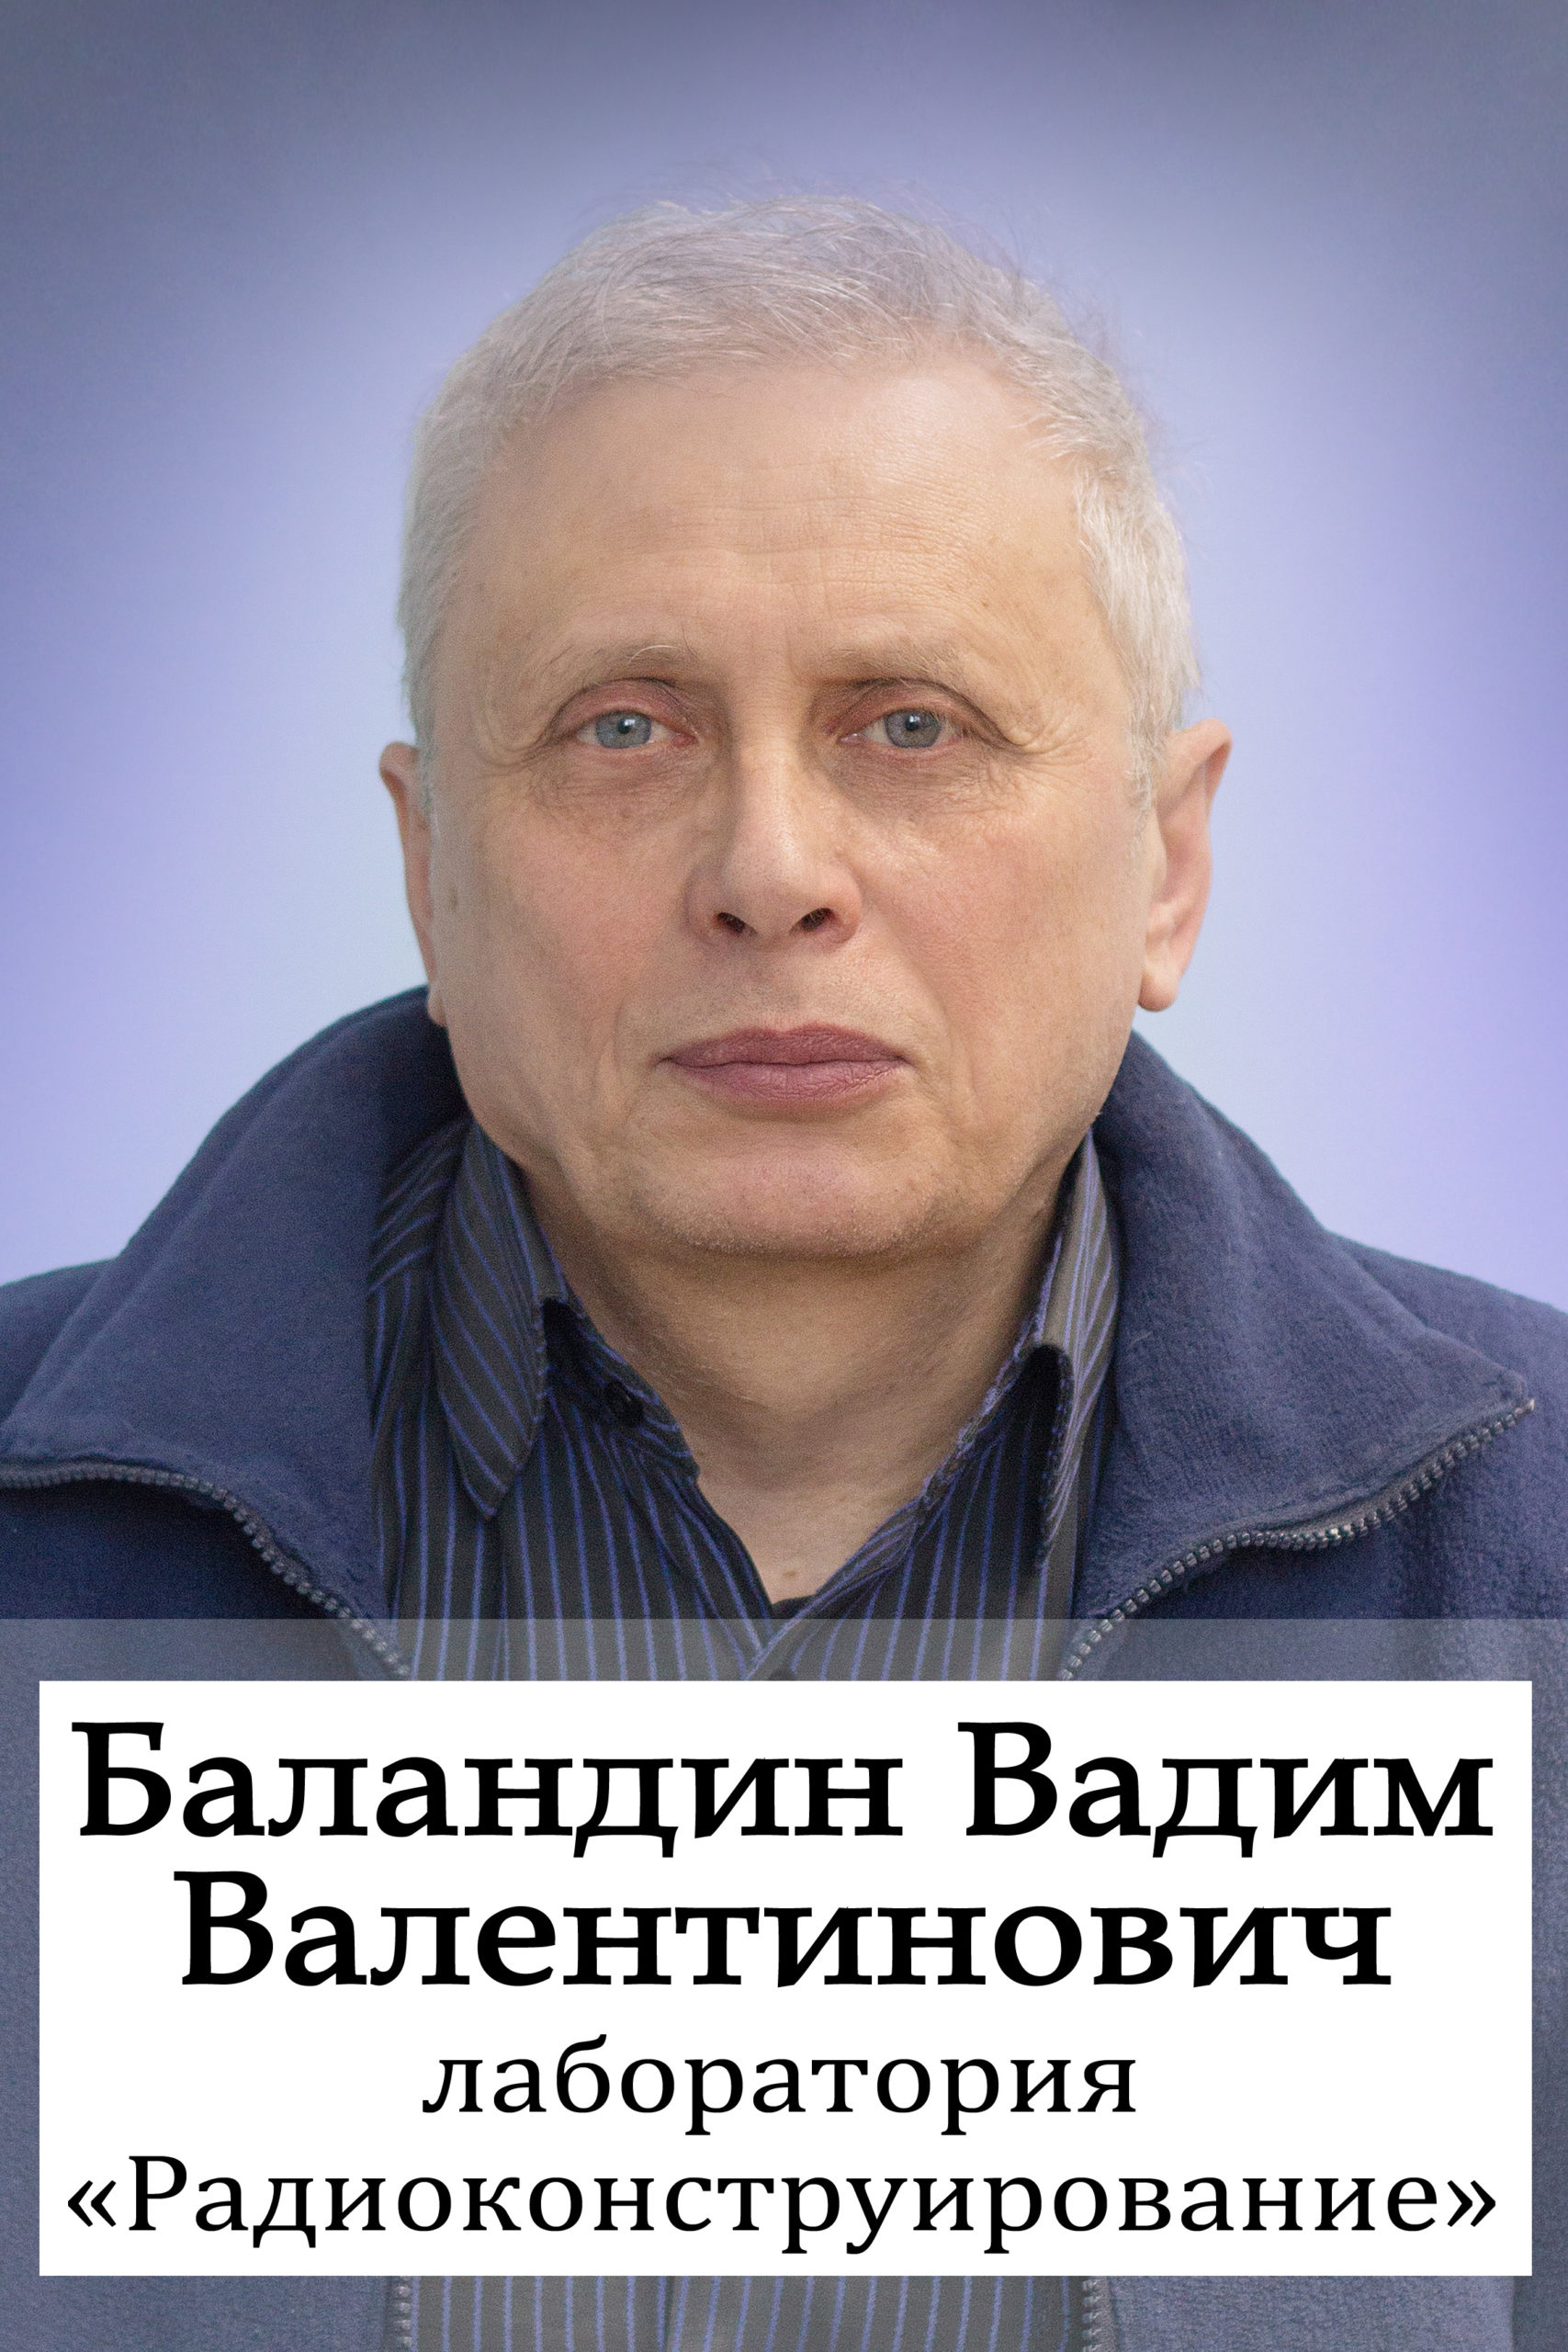 Баландин Вадим Валентинович